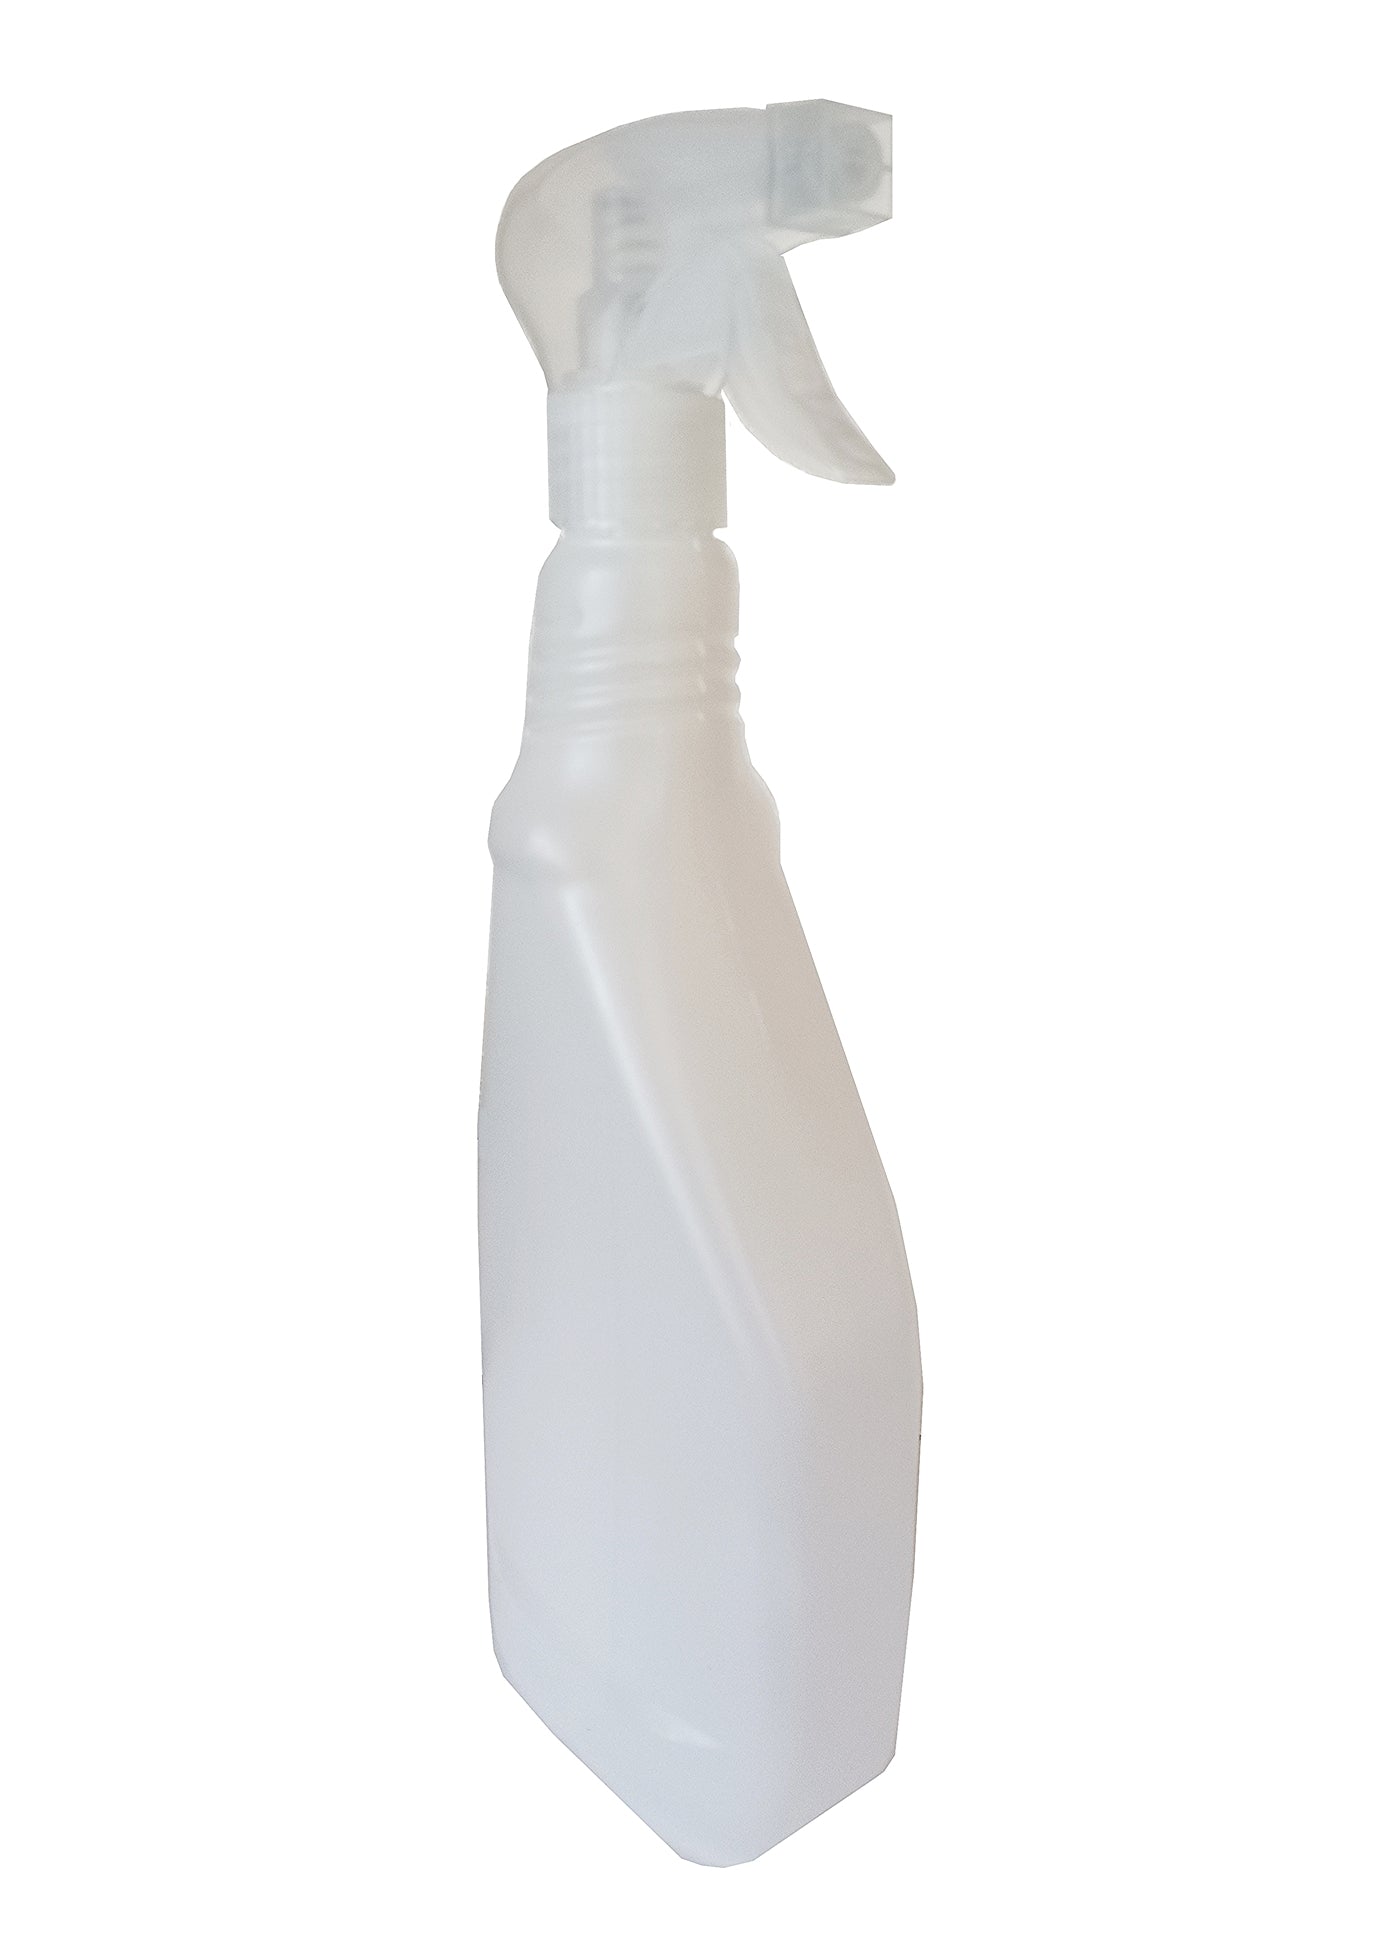 Plastic Trigger Spray Bottle - 1 Litre Capacity - Buy Online SPR Centre UK